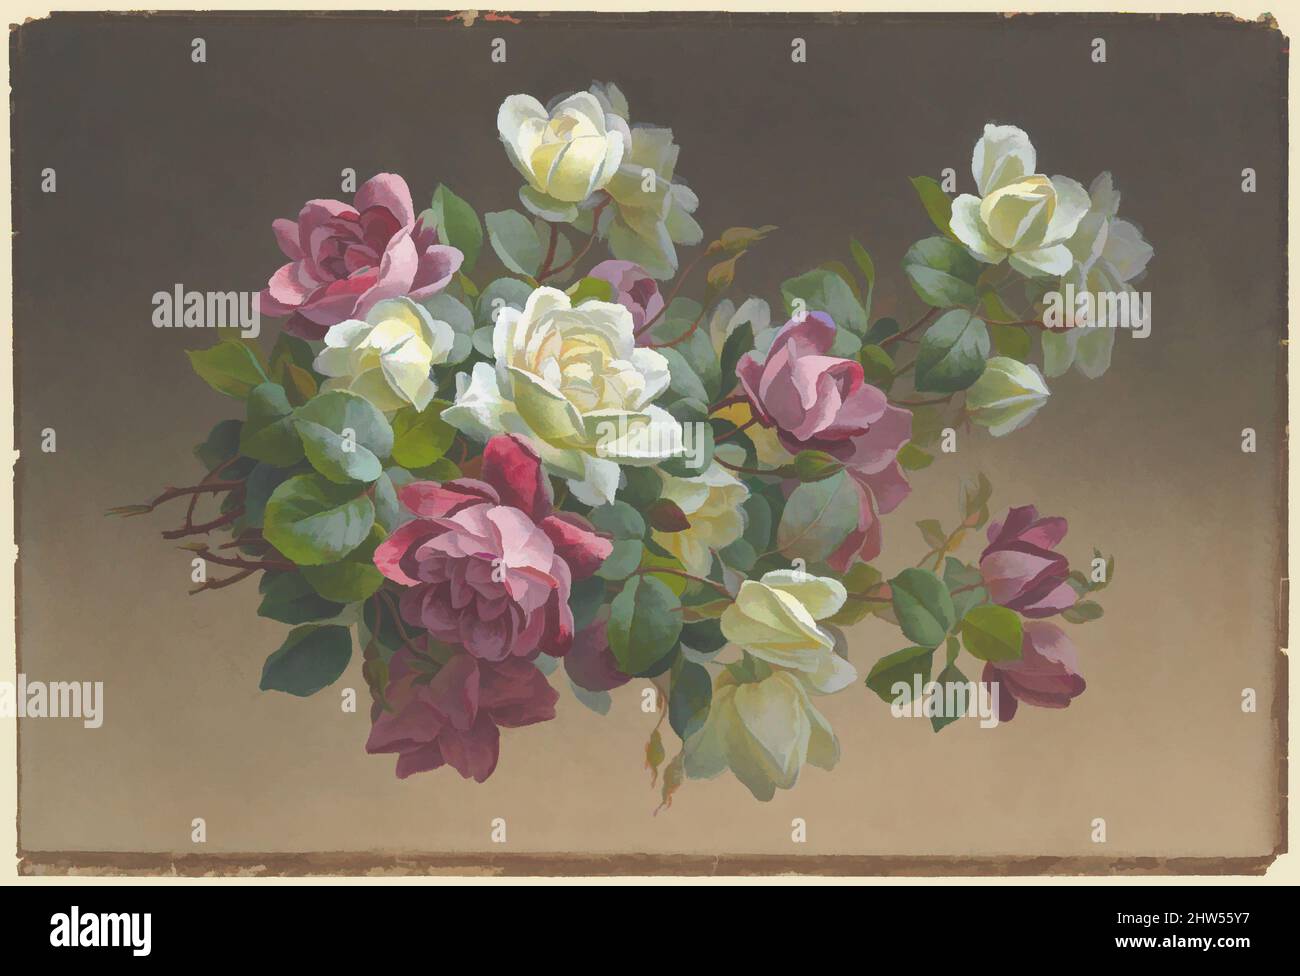 2 rosen – hoher -Bildmaterial -Fotos Auflösung in Alamy und